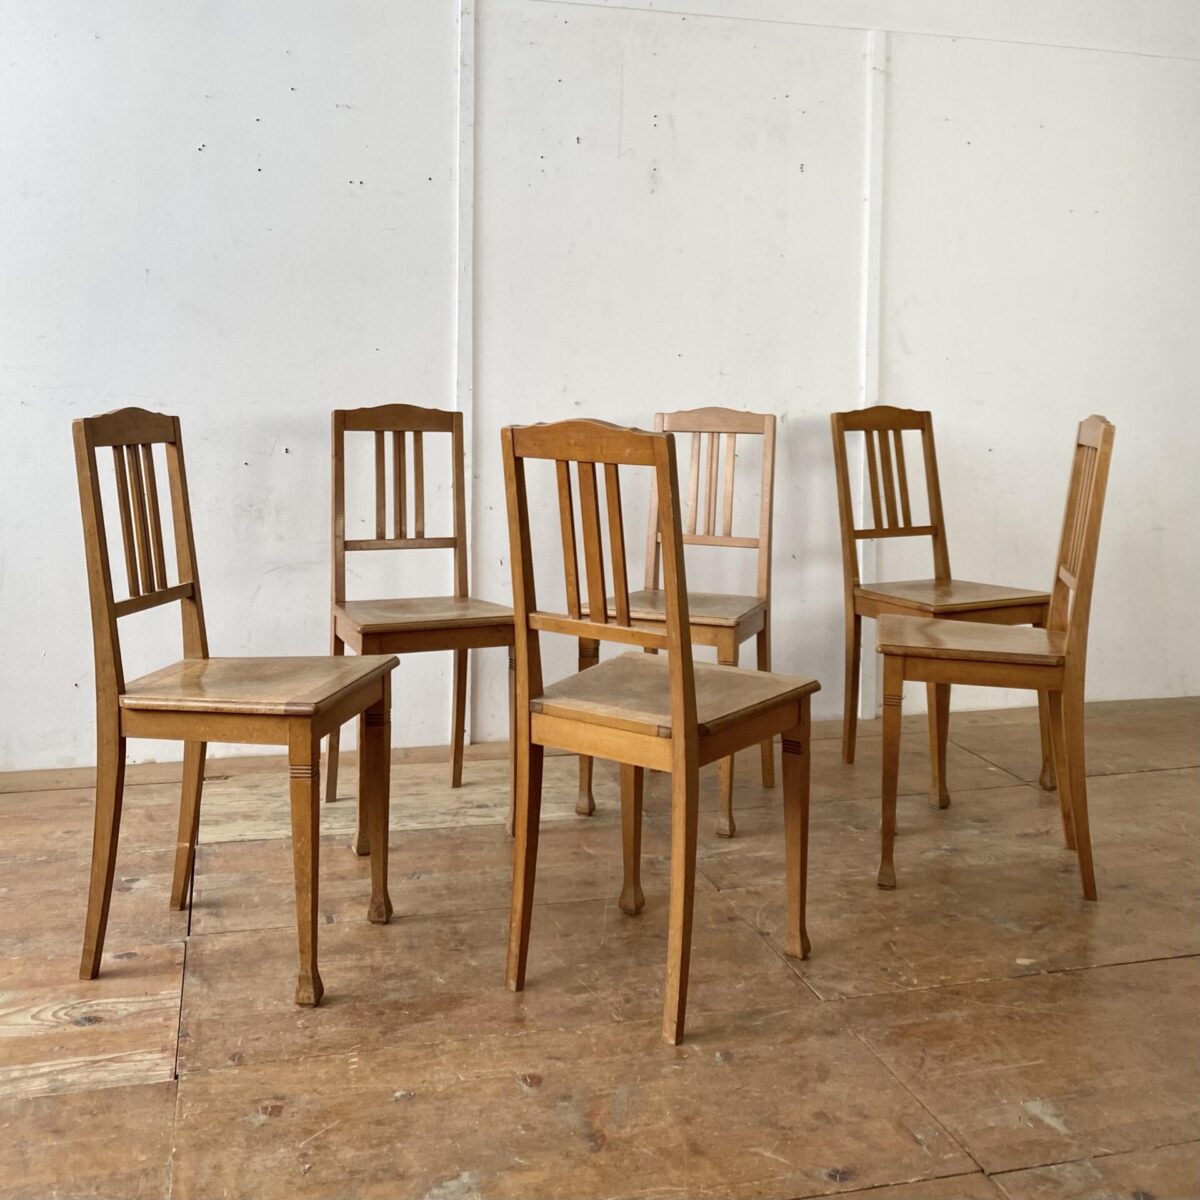 Deuxieme.shop biedermeierstühle. Luterma made in estonia. 6er Set Buchenholz Stühle. Preis fürs Set. Die Stühle sind in stabilem Zustand mit Gebrauchsspuren und Alterspatina. 